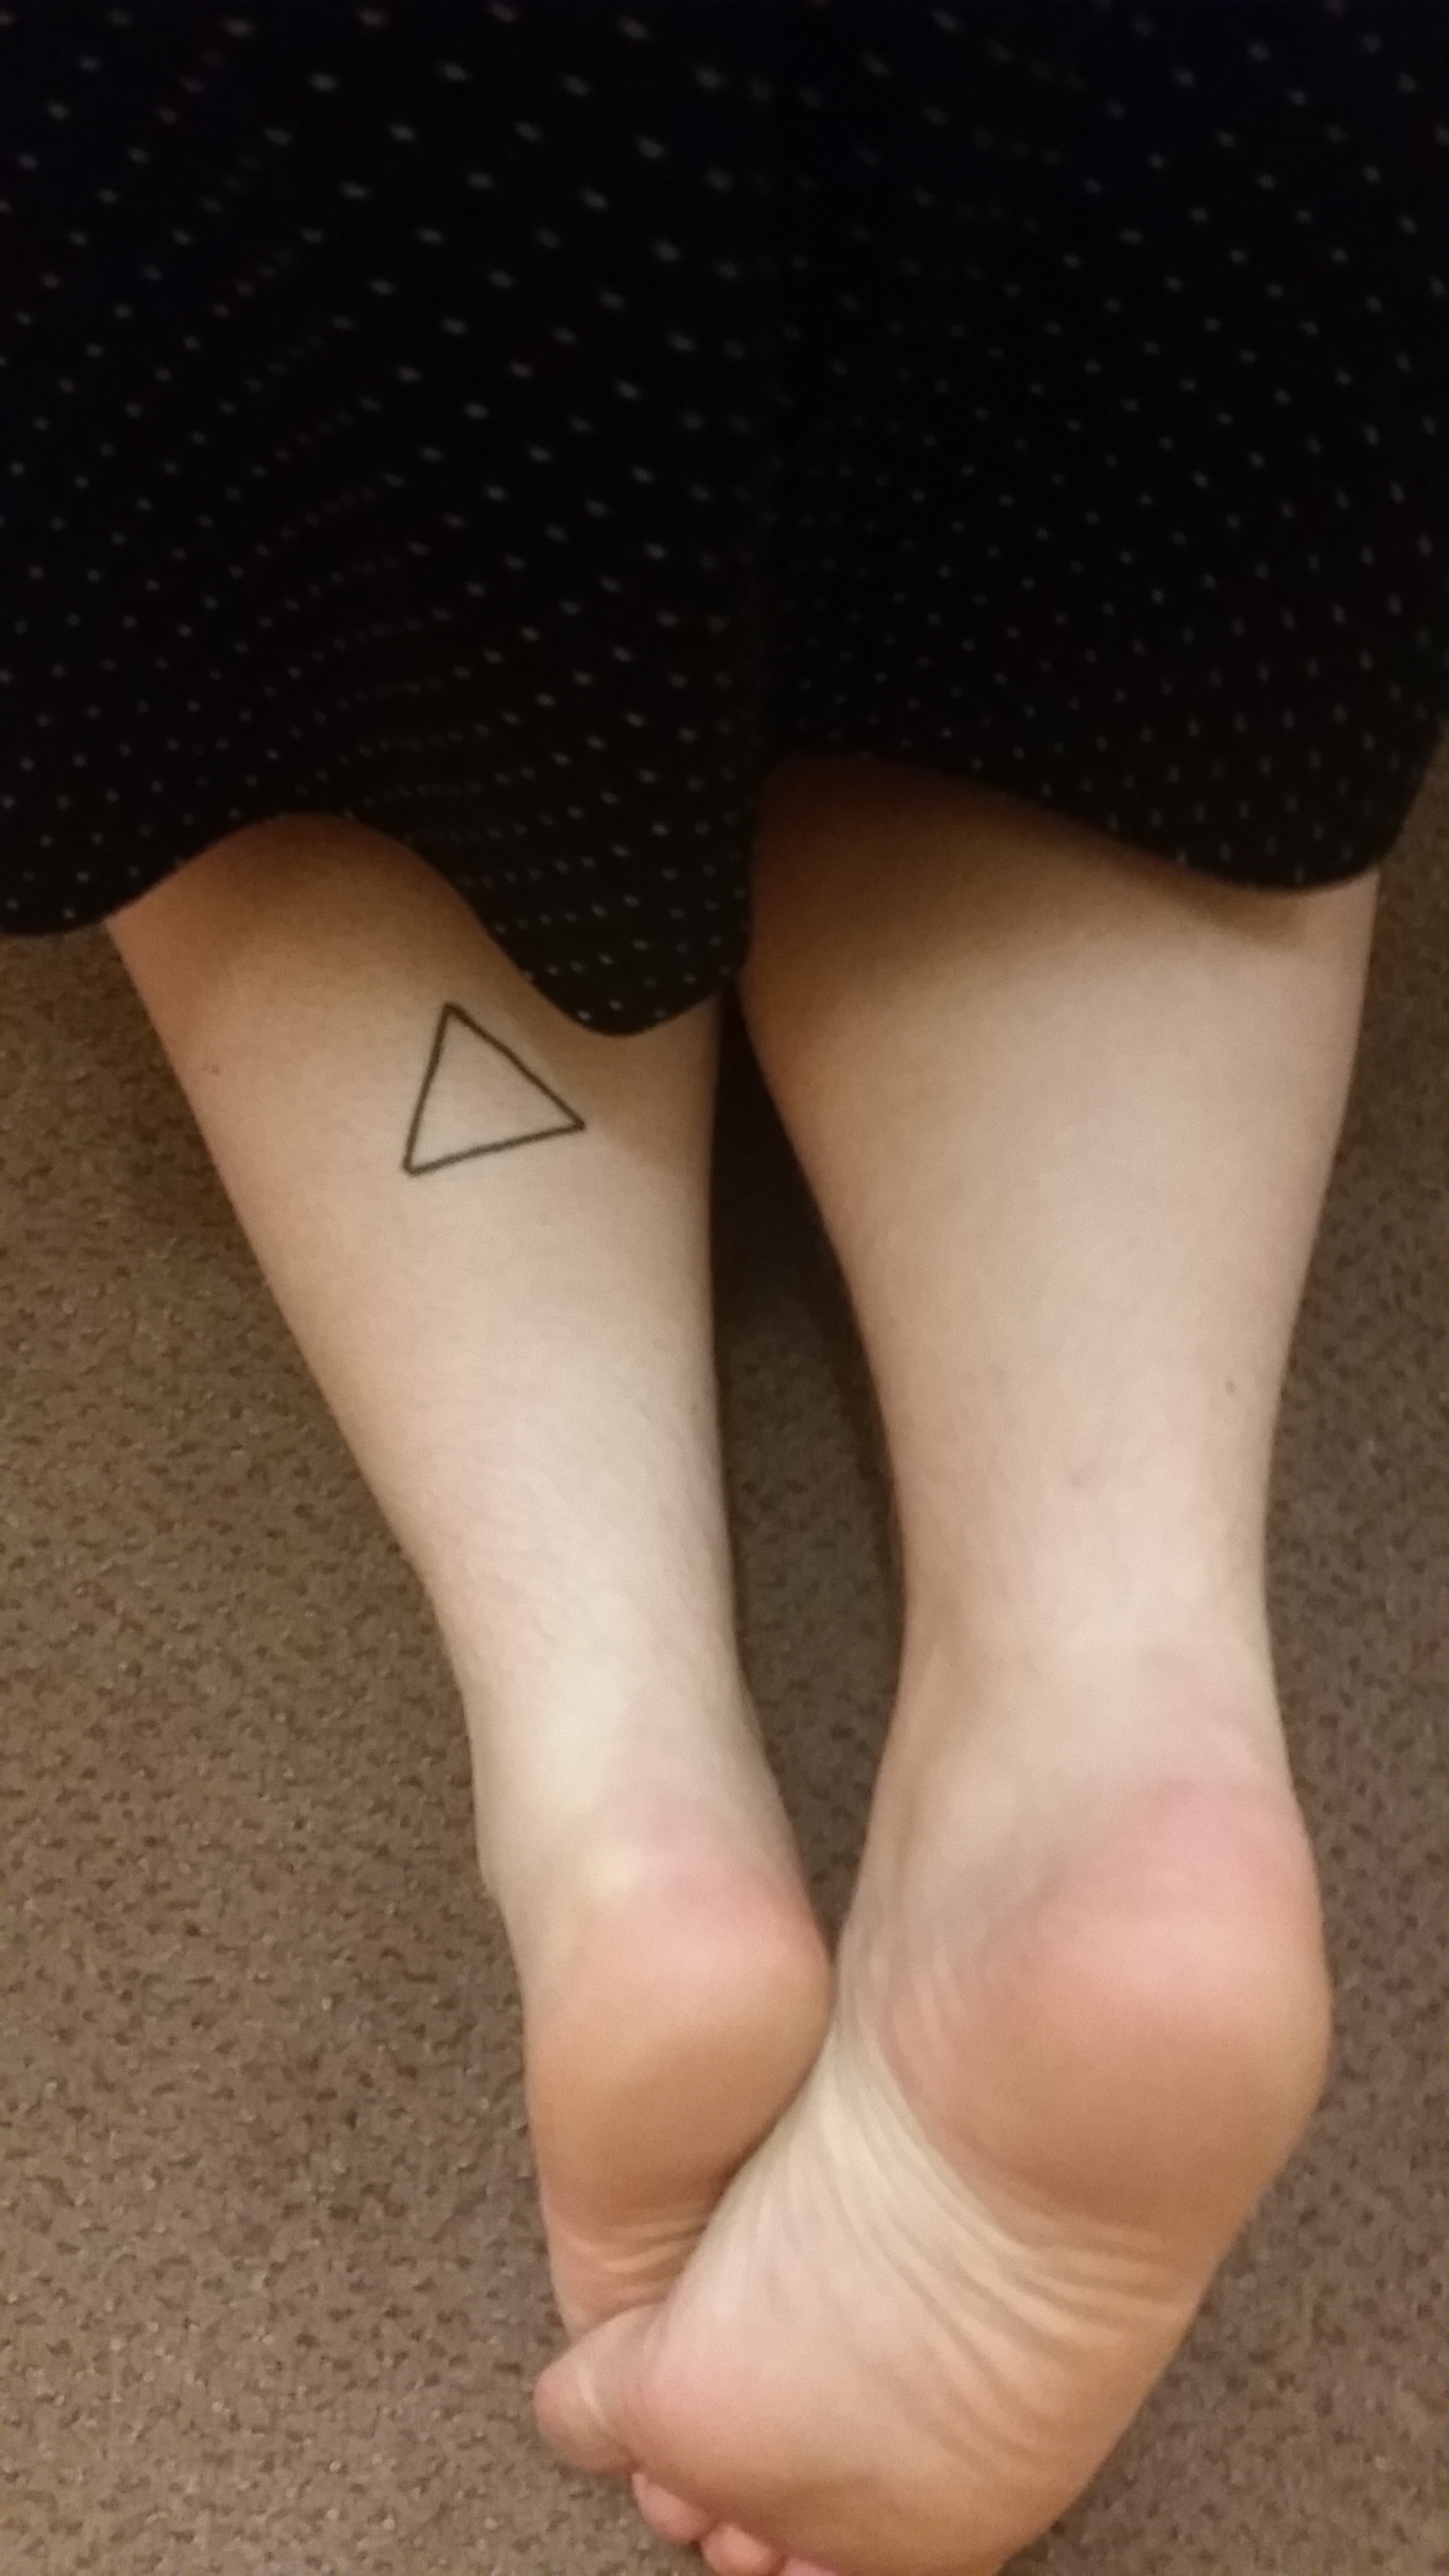 Lgbt Triangle Tattoo